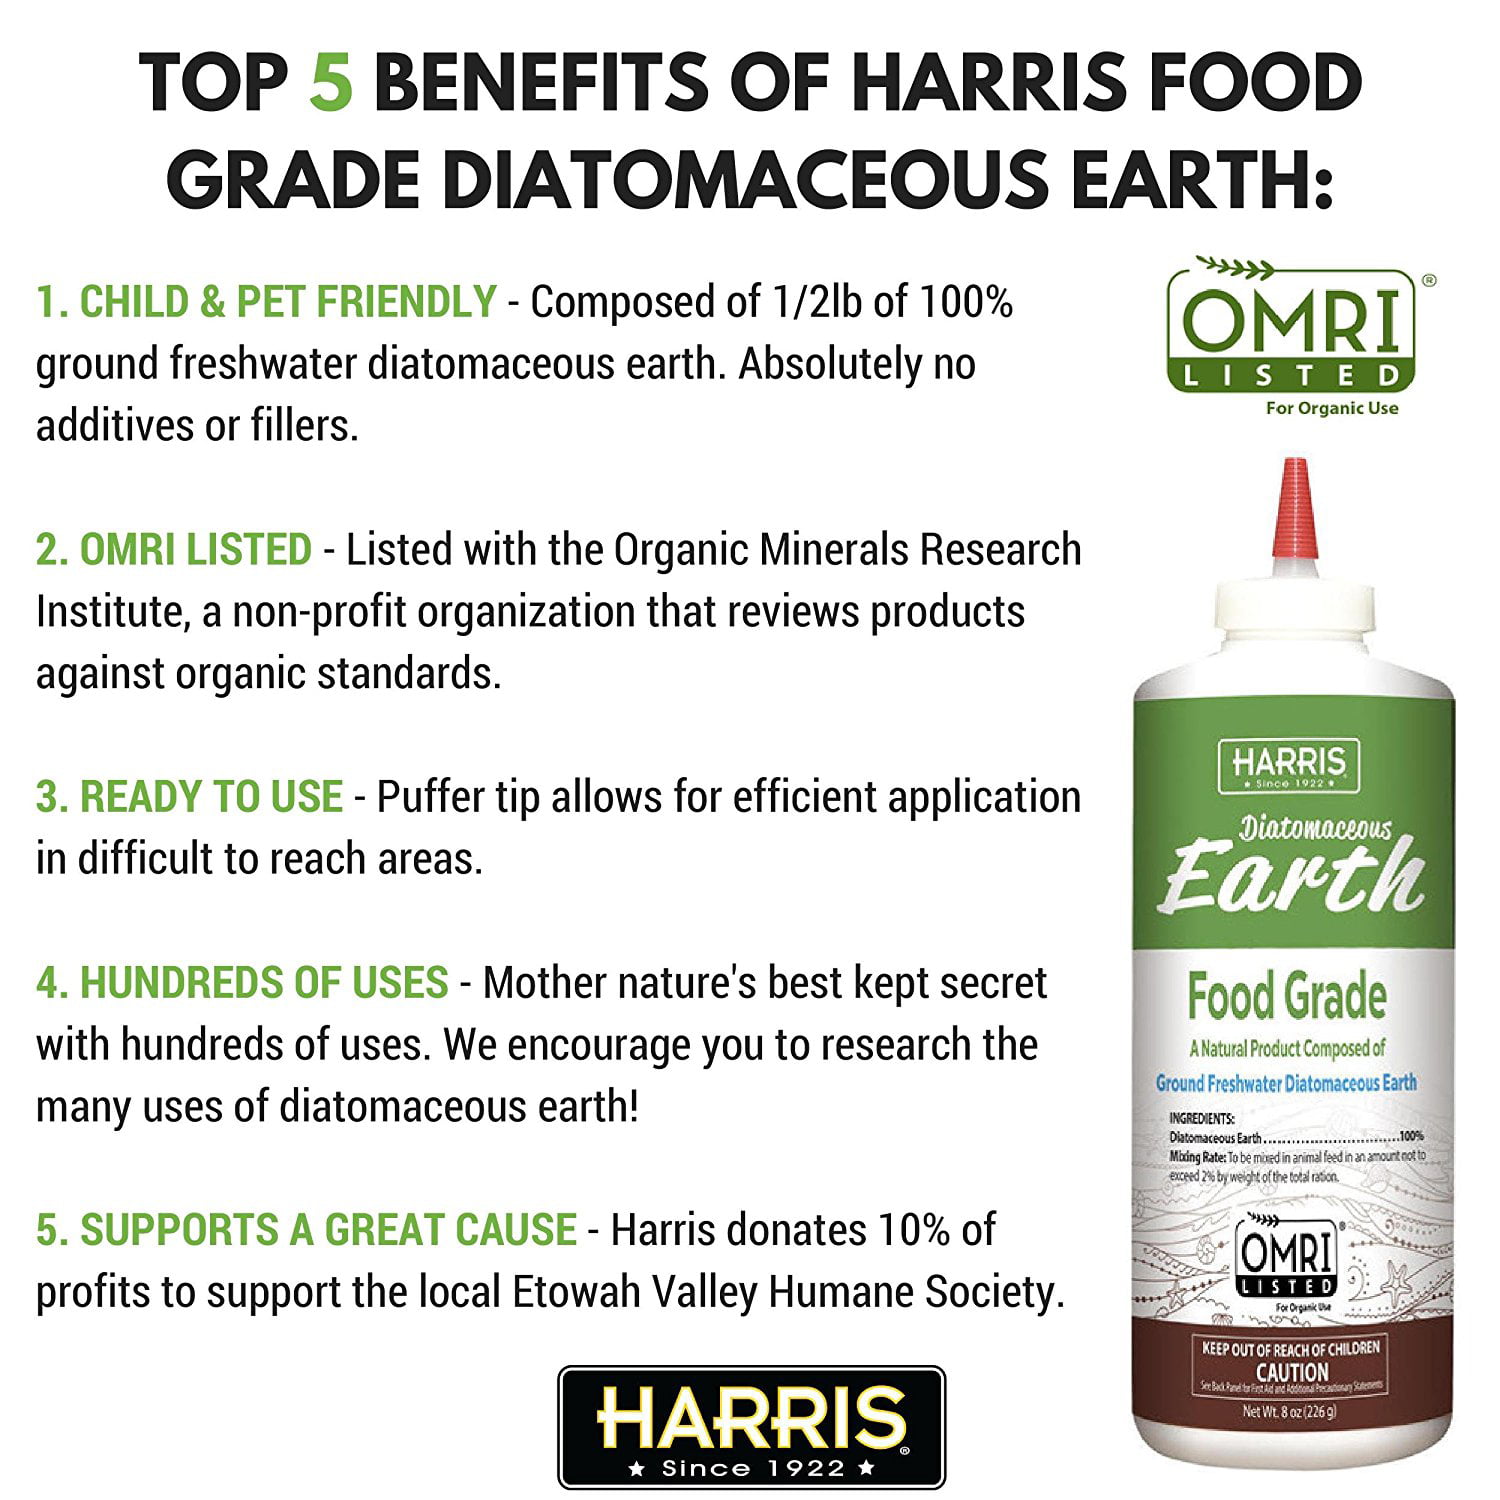 Harris Products Group Food Grade Diatomaceous Earth Mineral Supplement 4 Lb Walmart Com Walmart Com